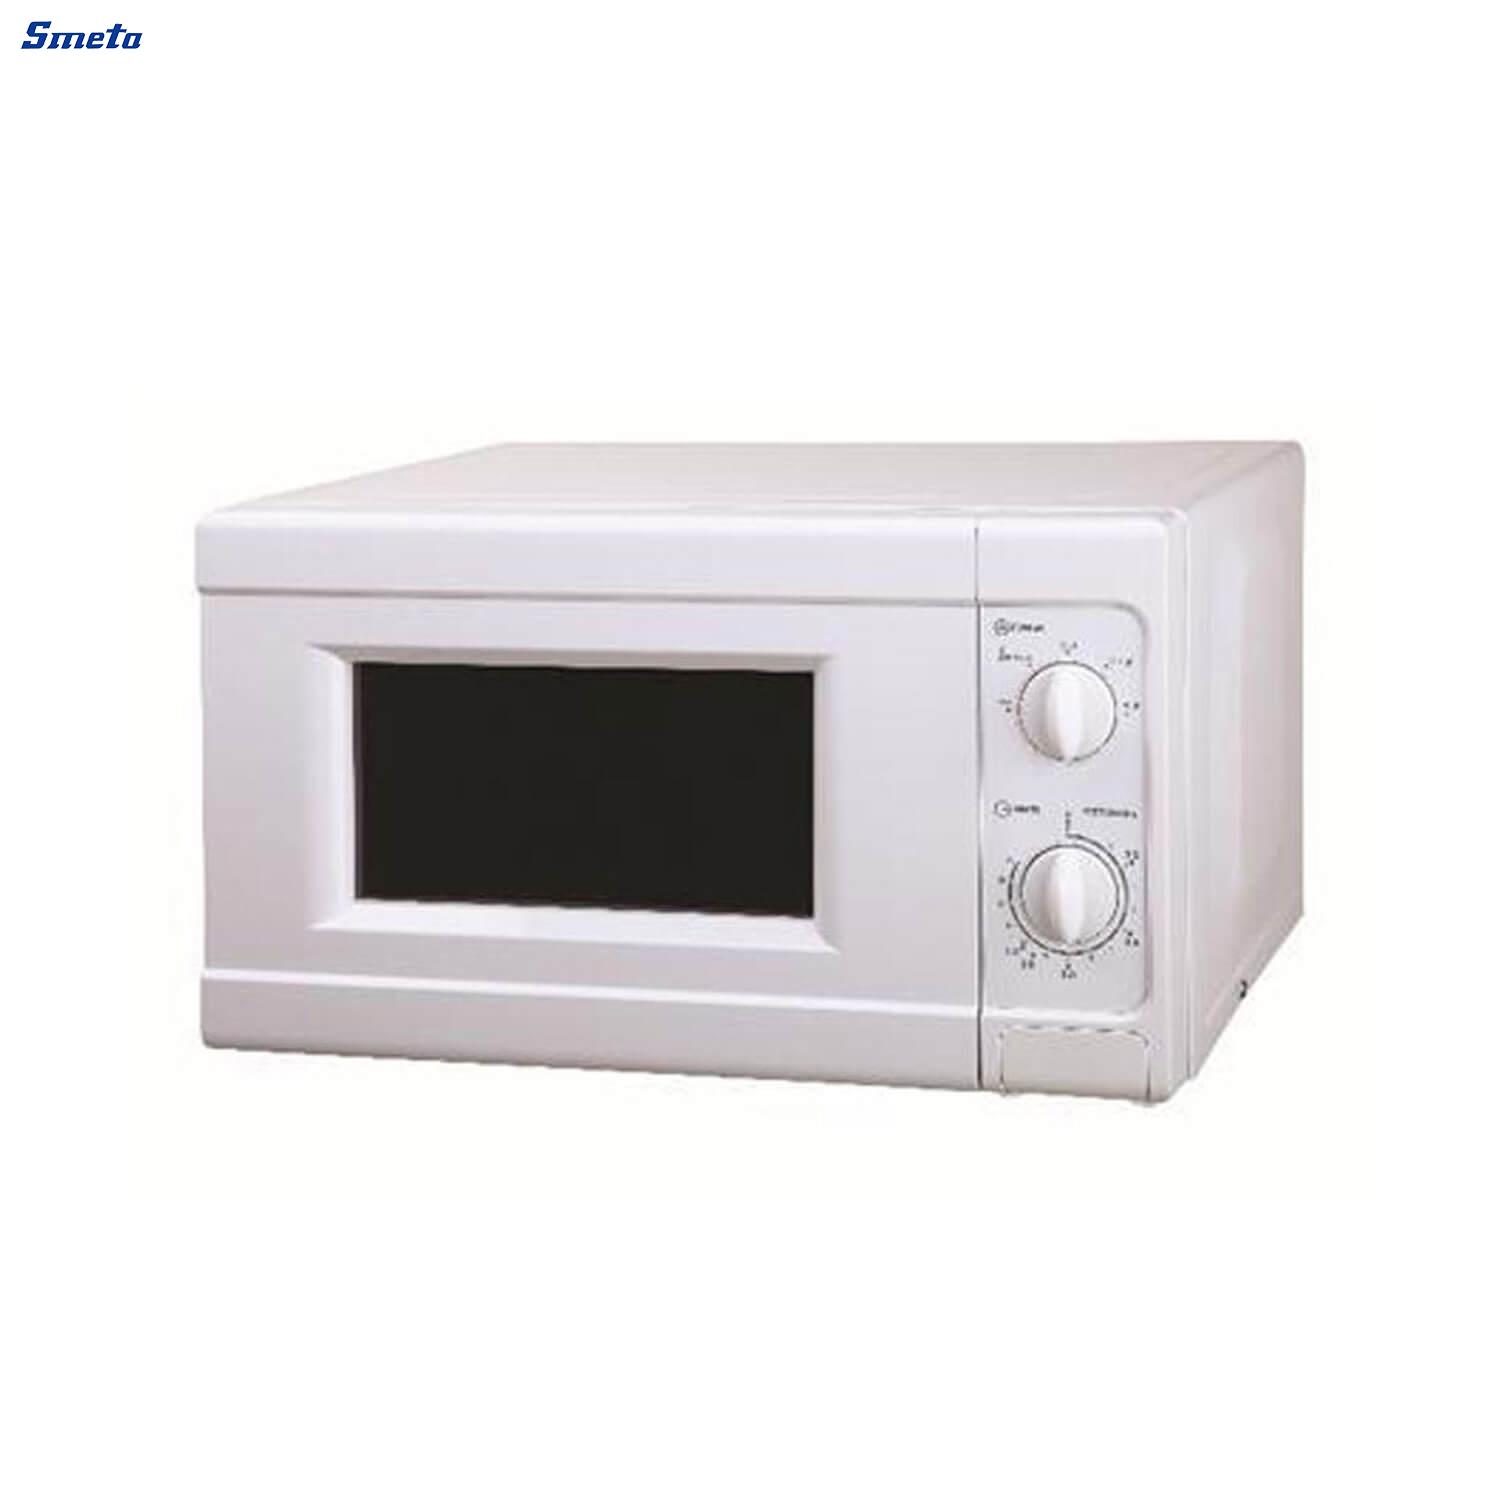 20L Counterto White Small Microwave Oven